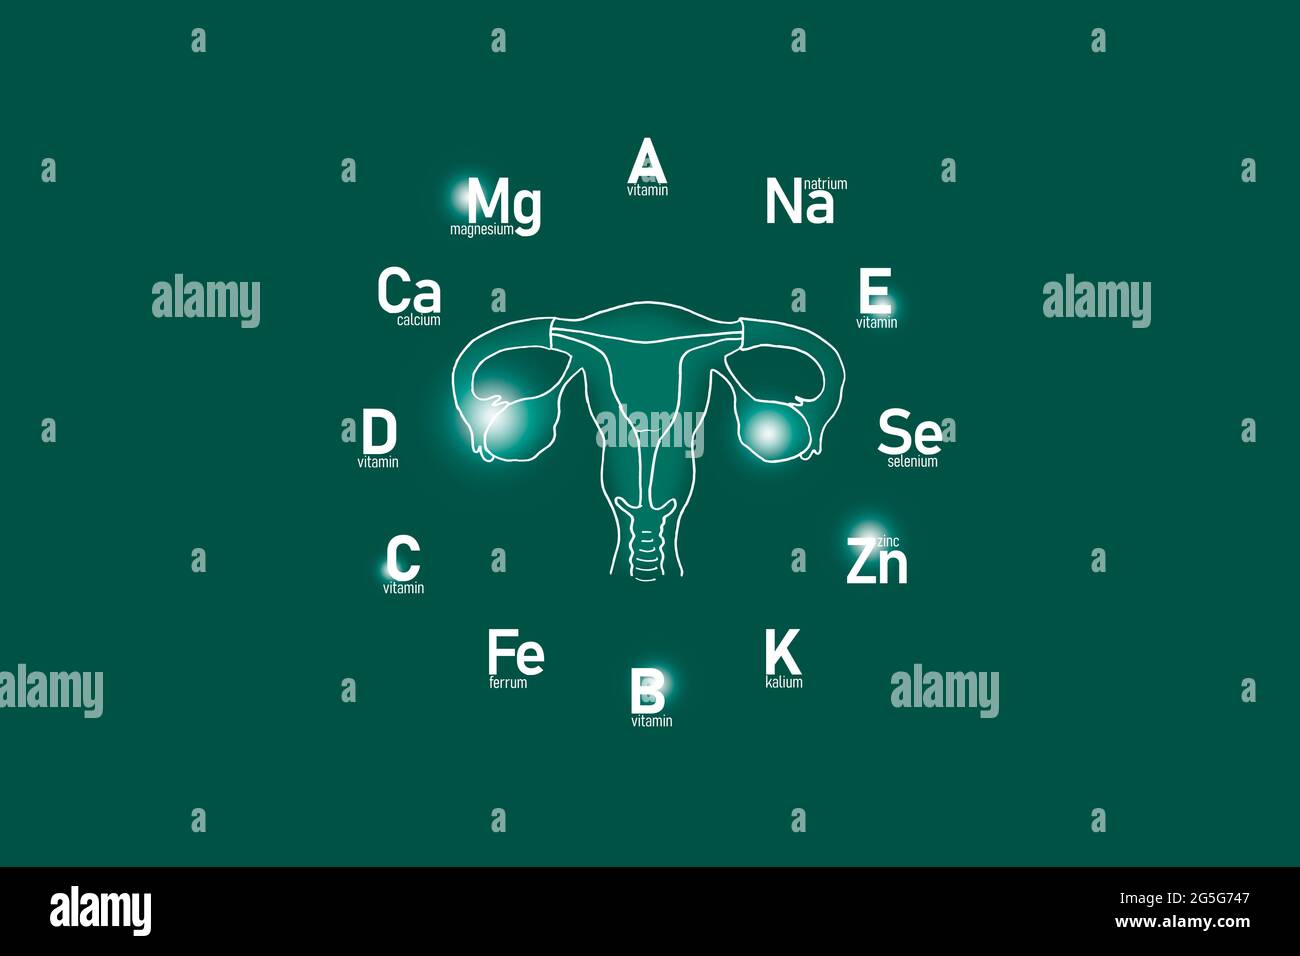 Cadran stylisé avec vitamines et microéléments essentiels pour la santé humaine, utérus dessiné à la main, fond vert profond. Banque D'Images